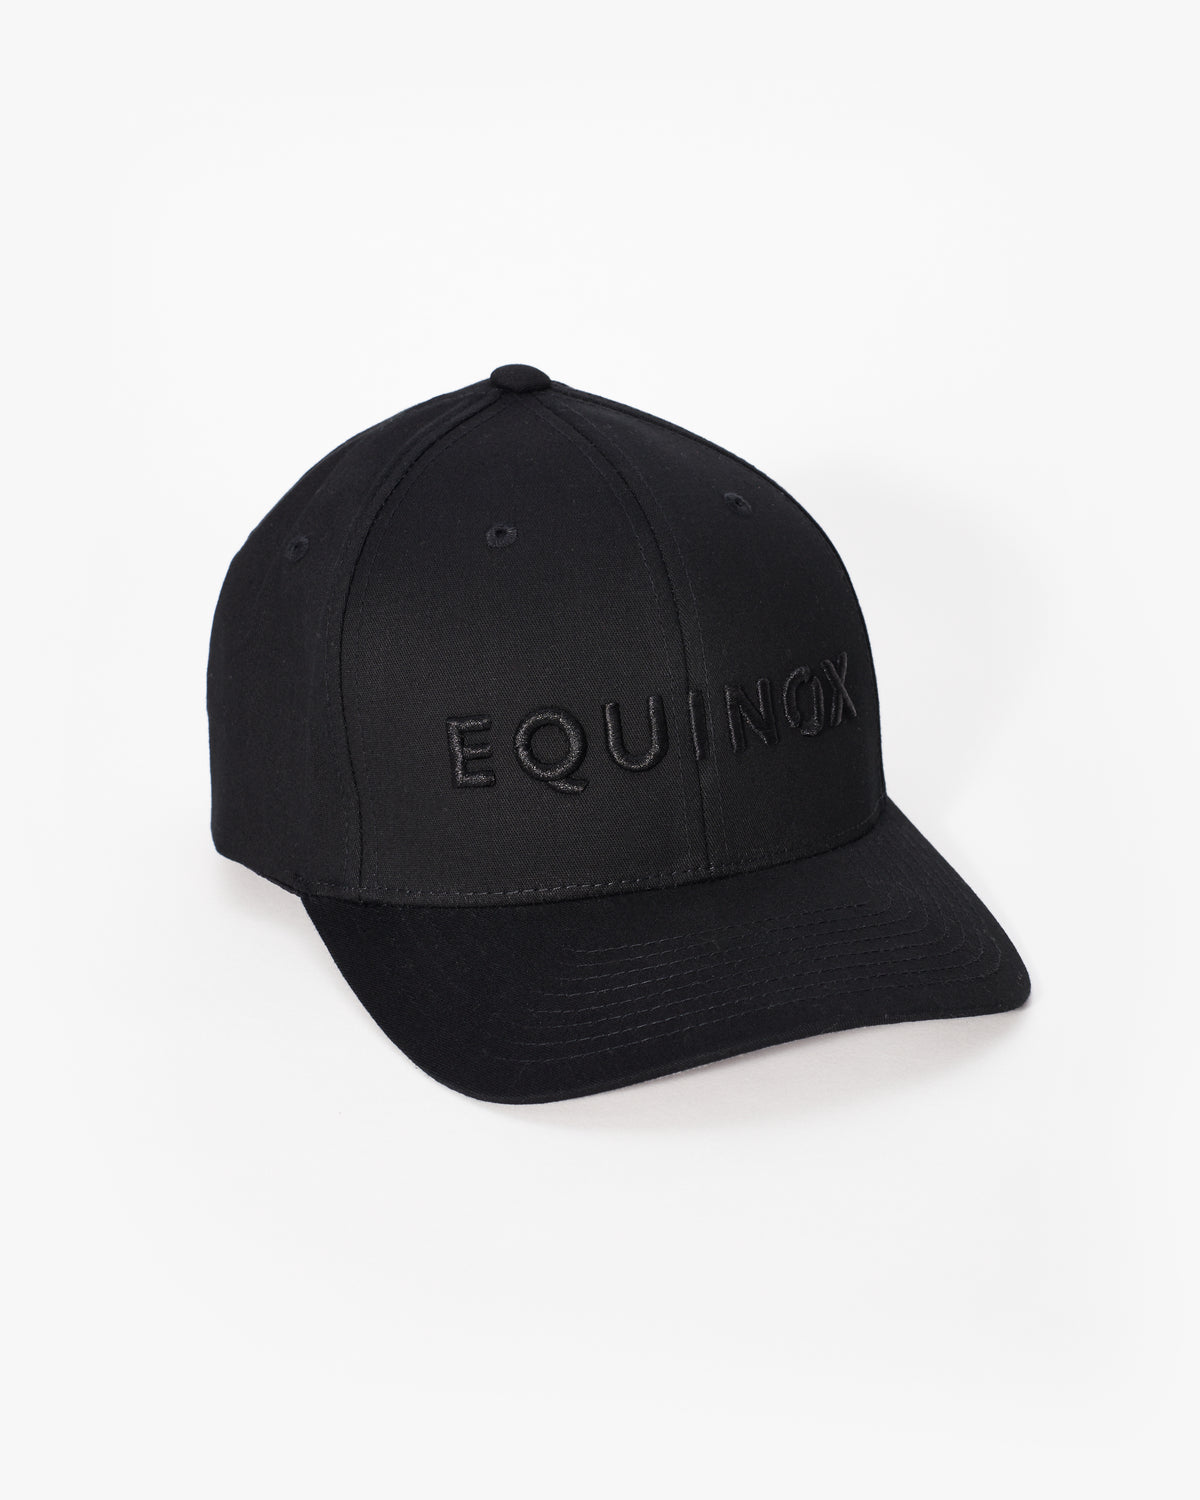 Equinox Flex Hat Shop – The Fit at Equinox